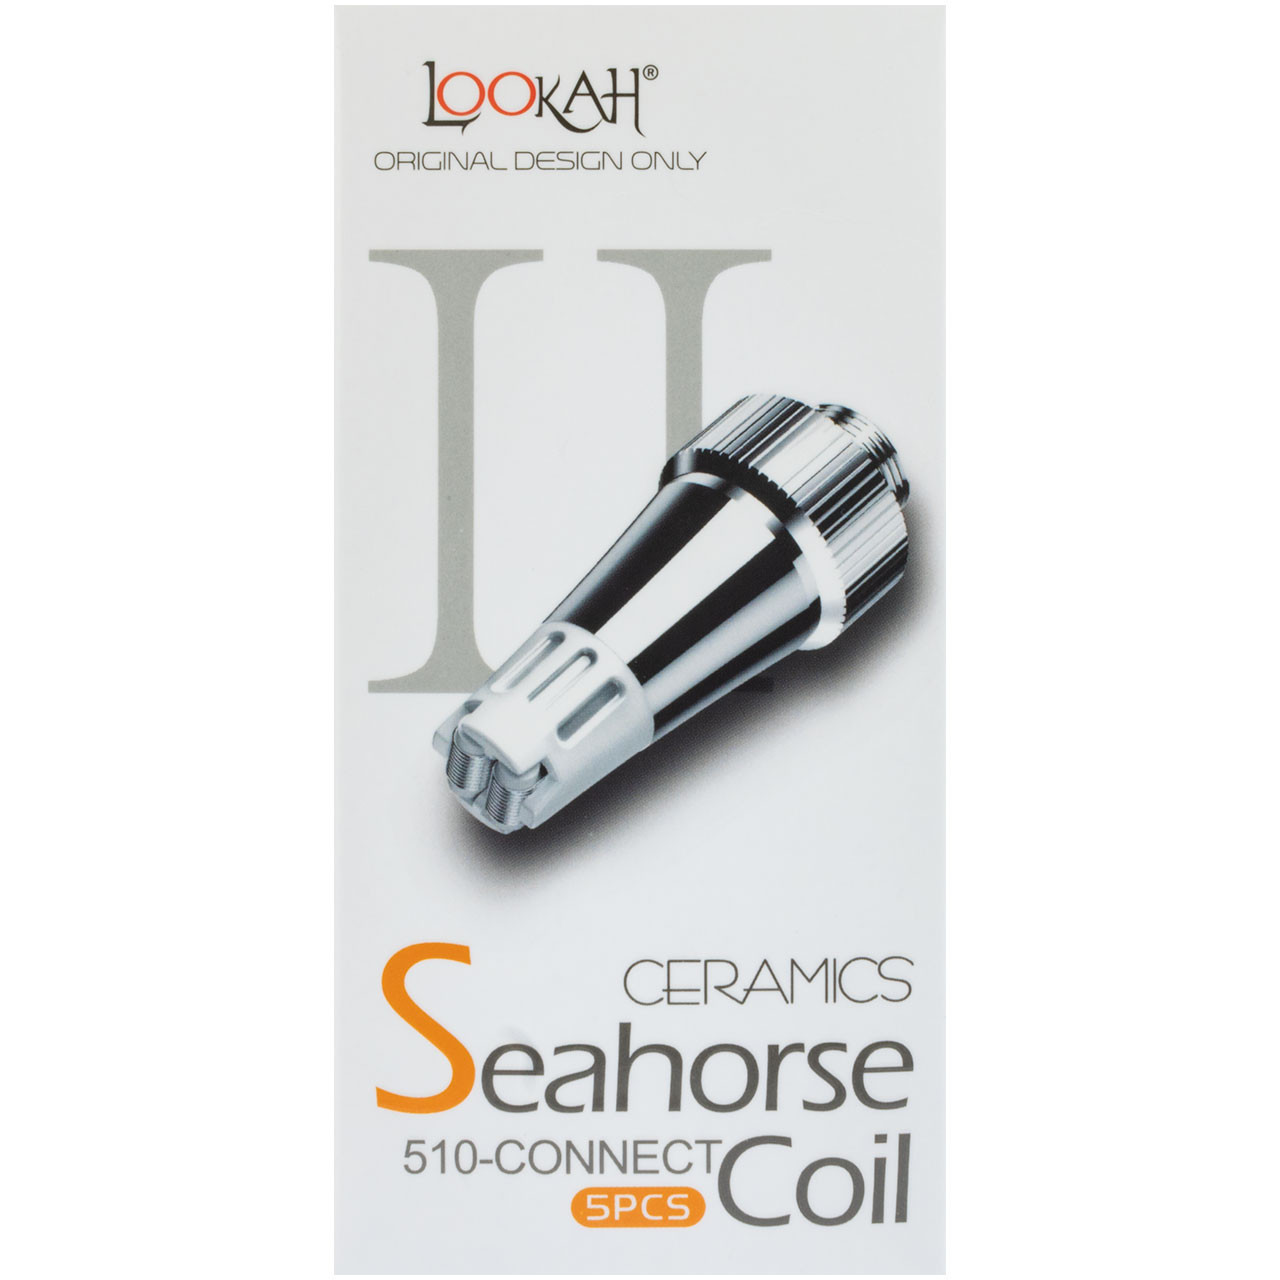 Lookah Seahorse PRO Ceramic Coil - 5 Pack